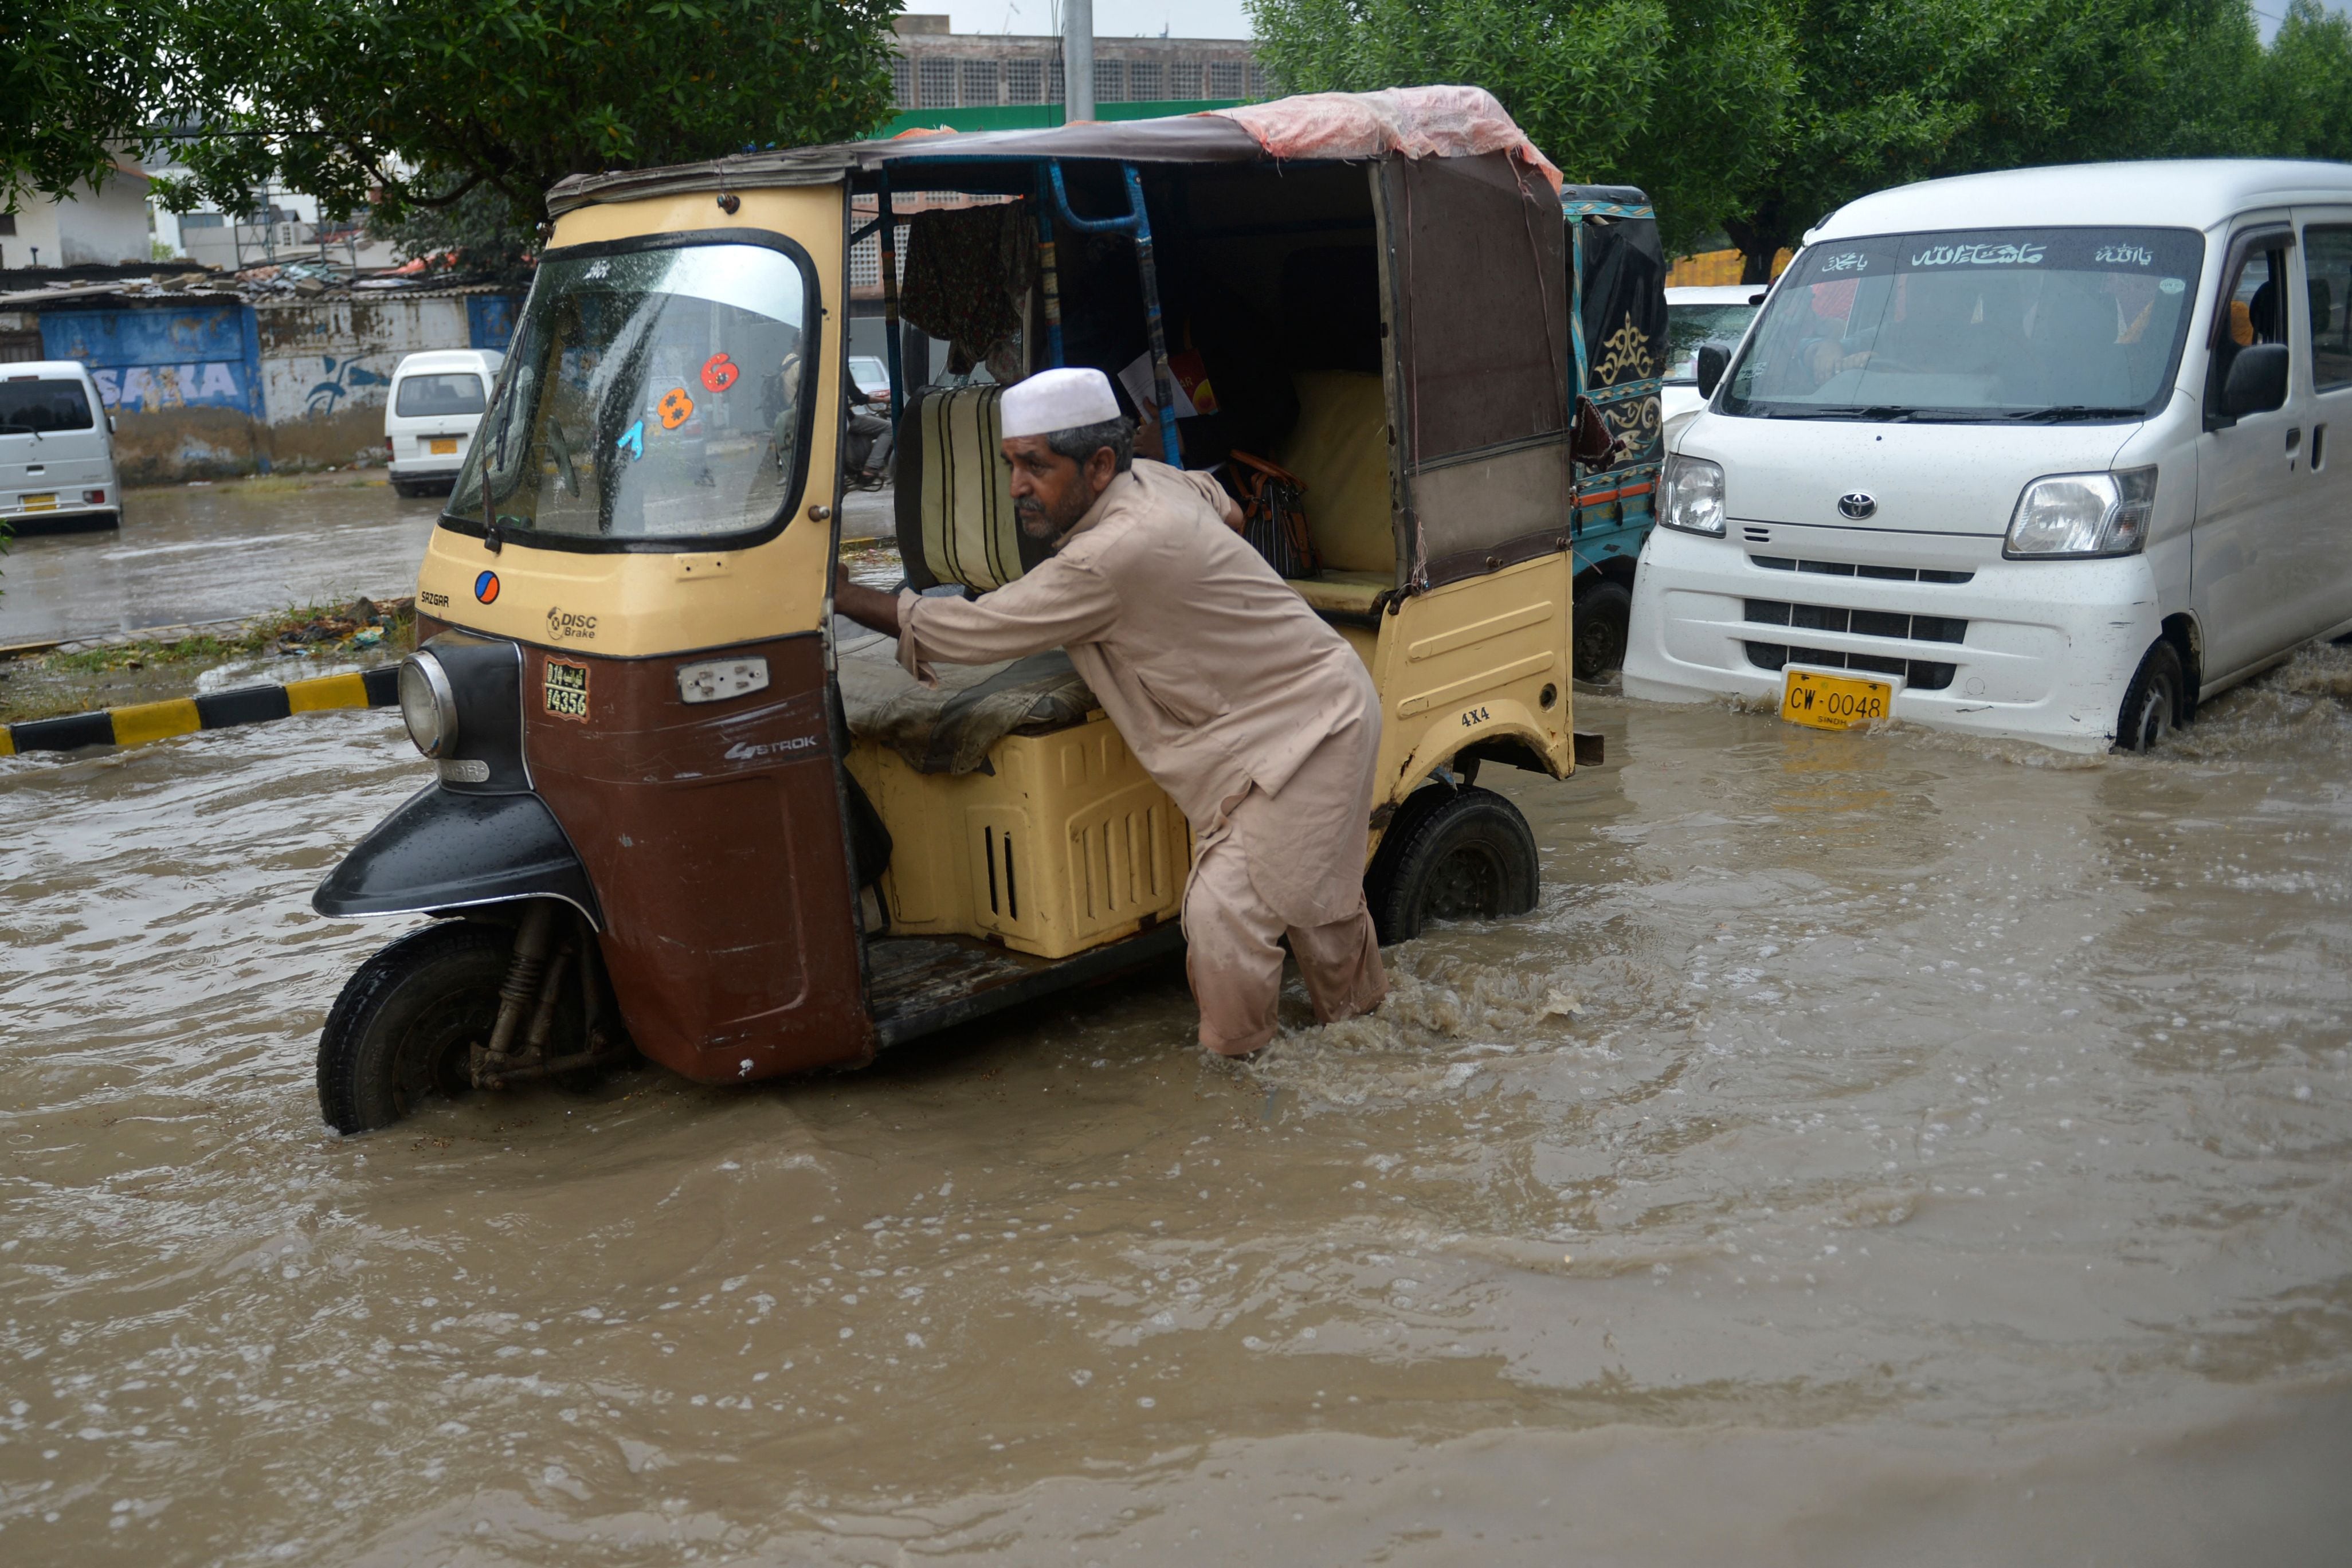 Un hombre empuja su 'tuk-tuk' por una calle inundada después de fuertes lluvias en Karachi, Pakistán, el 13 de septiembre de 2022. (Foto de Rizwan TABASSUM / AFP)